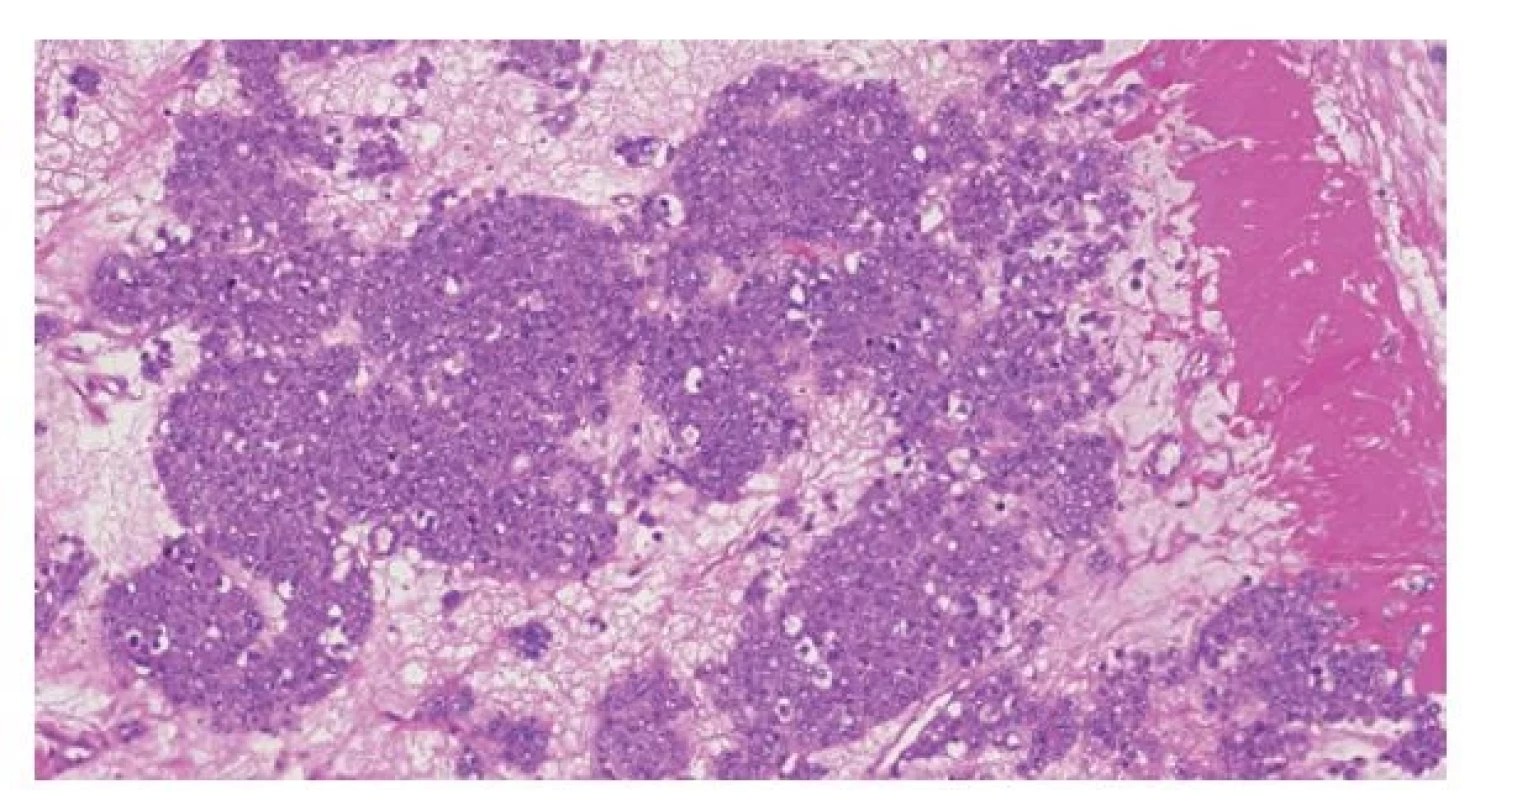 Anaplastický spermatocytický tumor. Histologicky jde o tumor uniformního
vzhledu, což je dáno přítomností pouze intermediárního typu buněk
(klasický spermatocytický tumor je charakterizován nádorovými buňkami
třech velikostí).